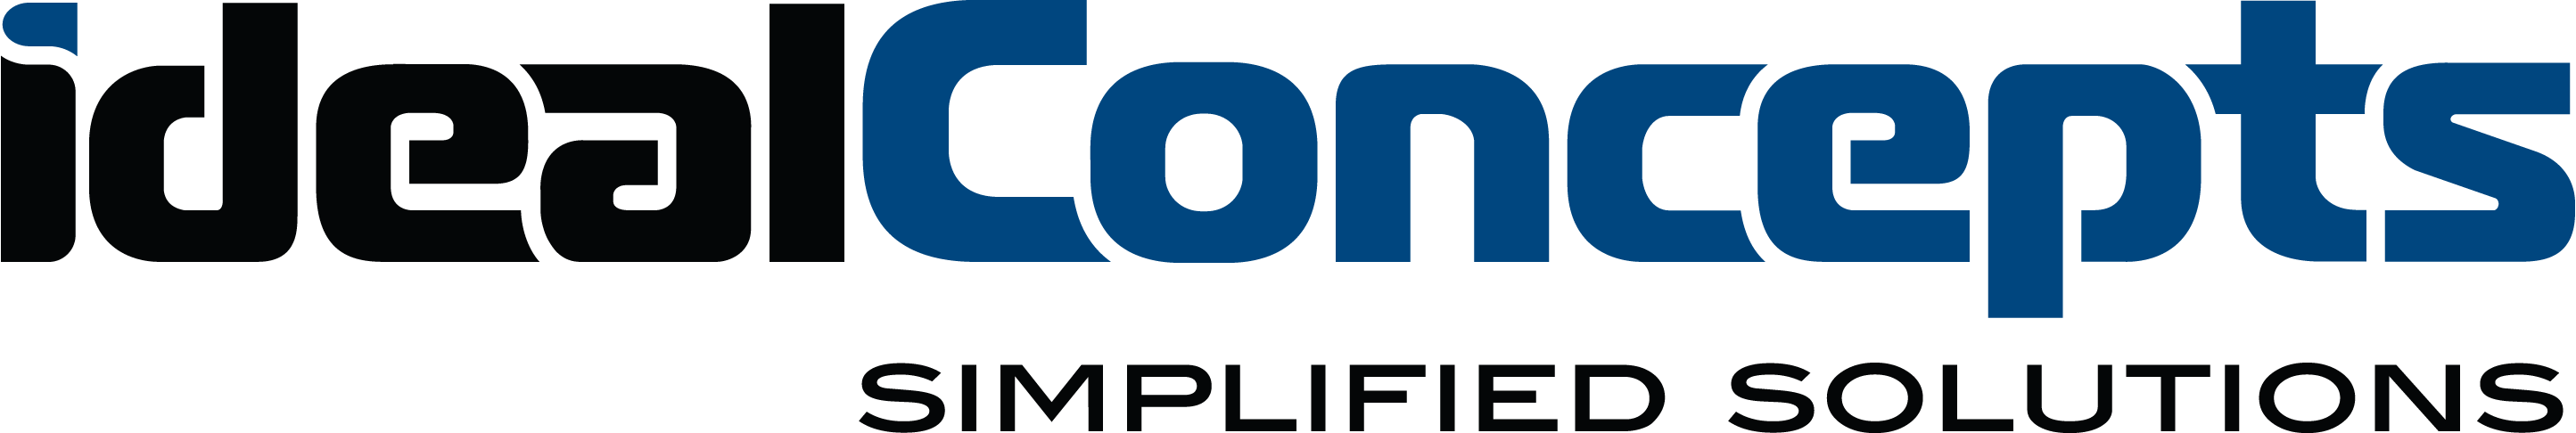 Ideal Concepts, Inc. Company Logo